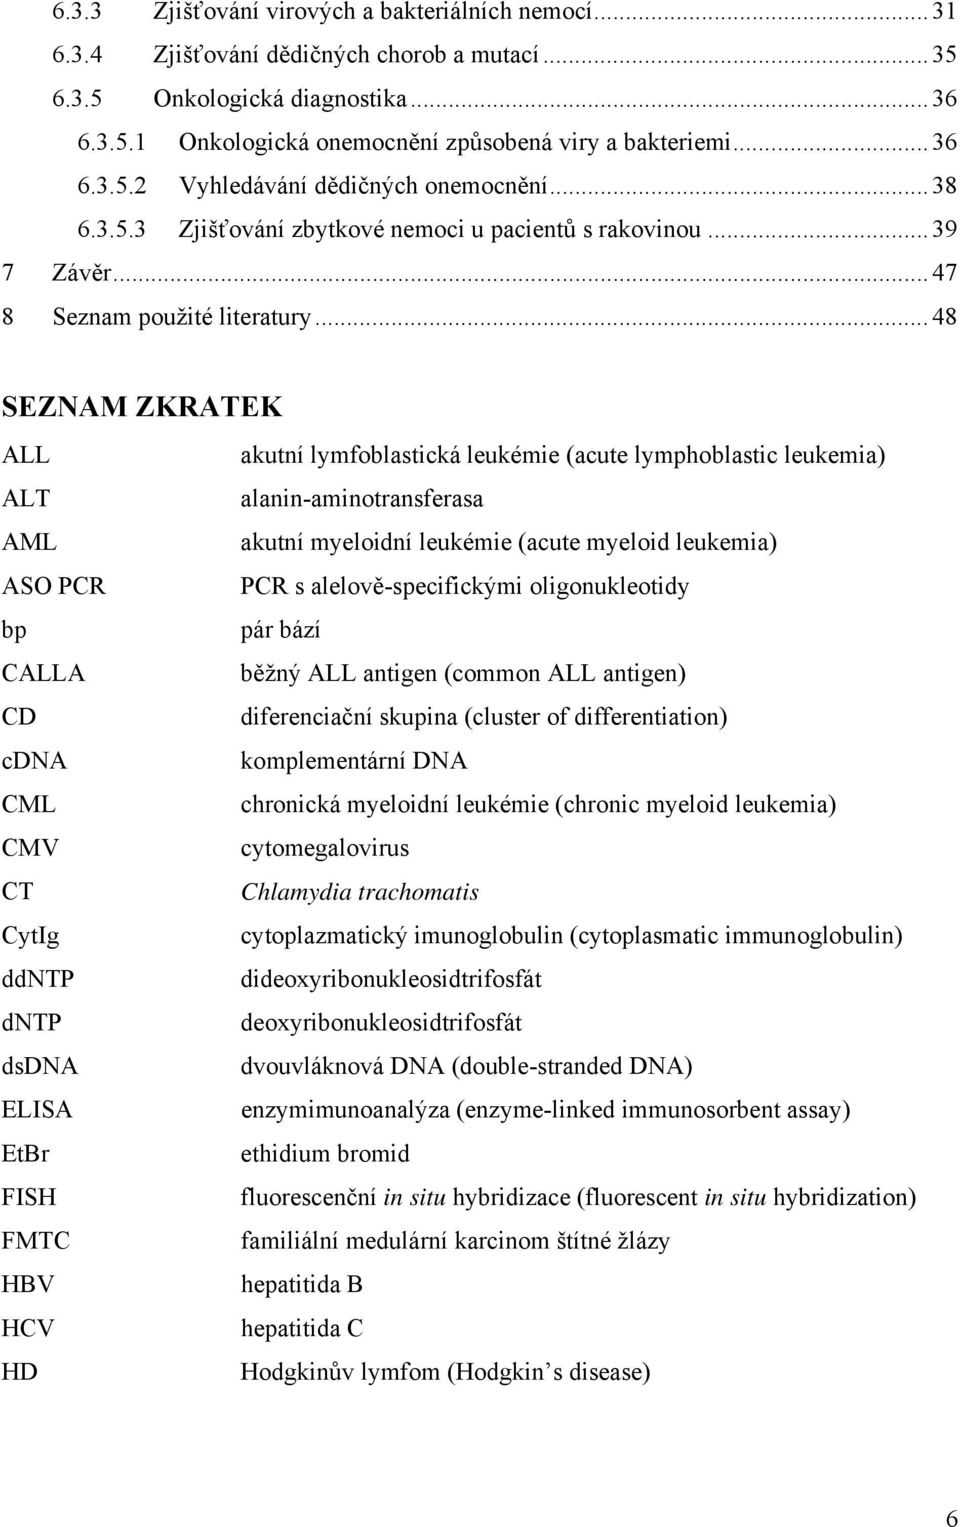 ..48 SEZNAM ZKRATEK ALL akutní lymfoblastická leukémie (acute lymphoblastic leukemia) ALT alanin-aminotransferasa AML akutní myeloidní leukémie (acute myeloid leukemia) ASO PCR PCR s